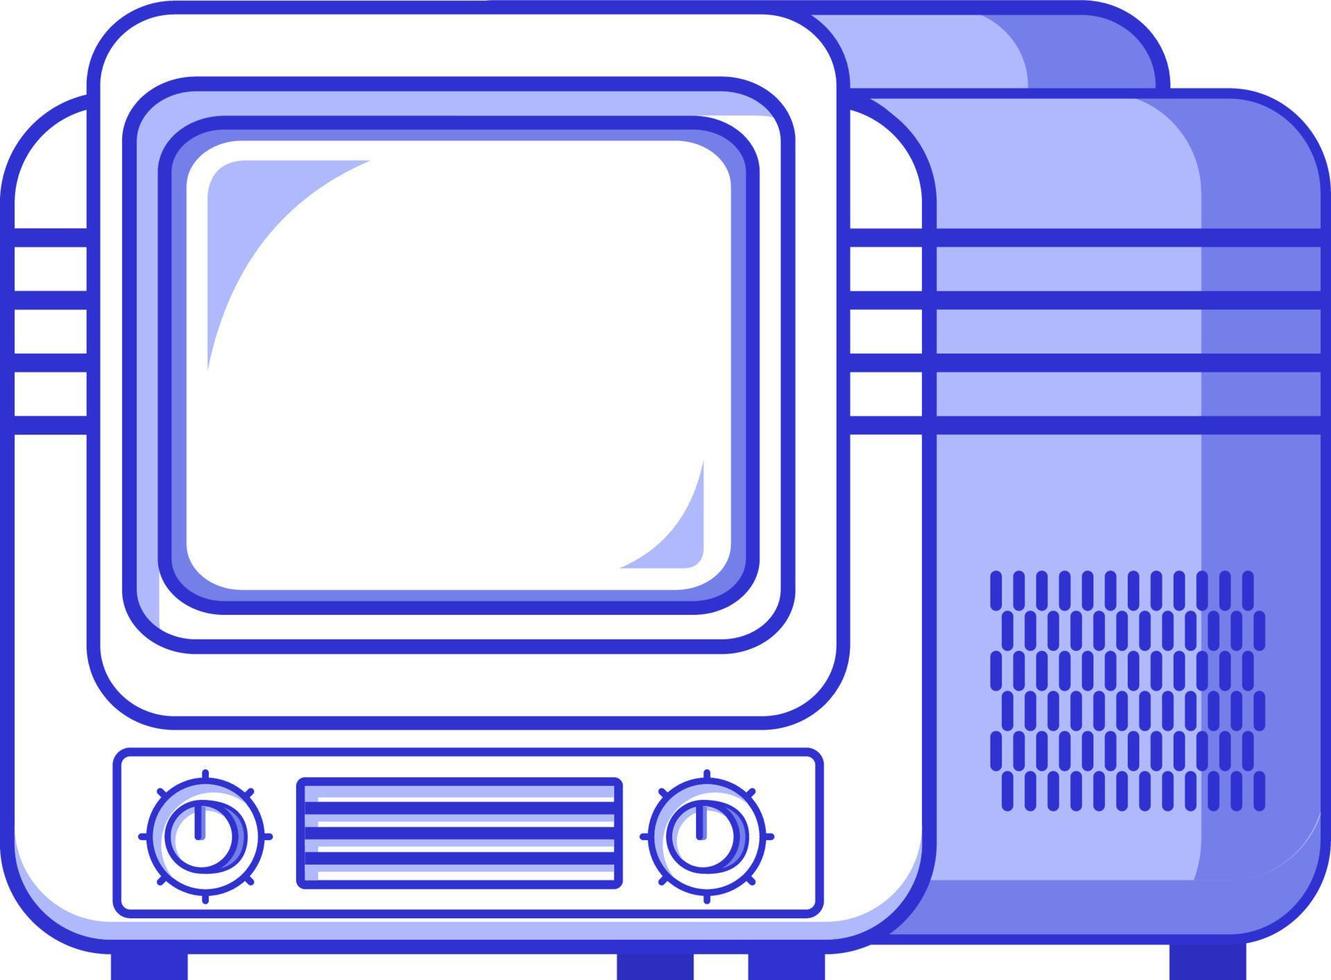 velho tv.retro vintage tv icon.outline vetor plano isolado em um background.symbol branco para um aplicativo móvel ou site.